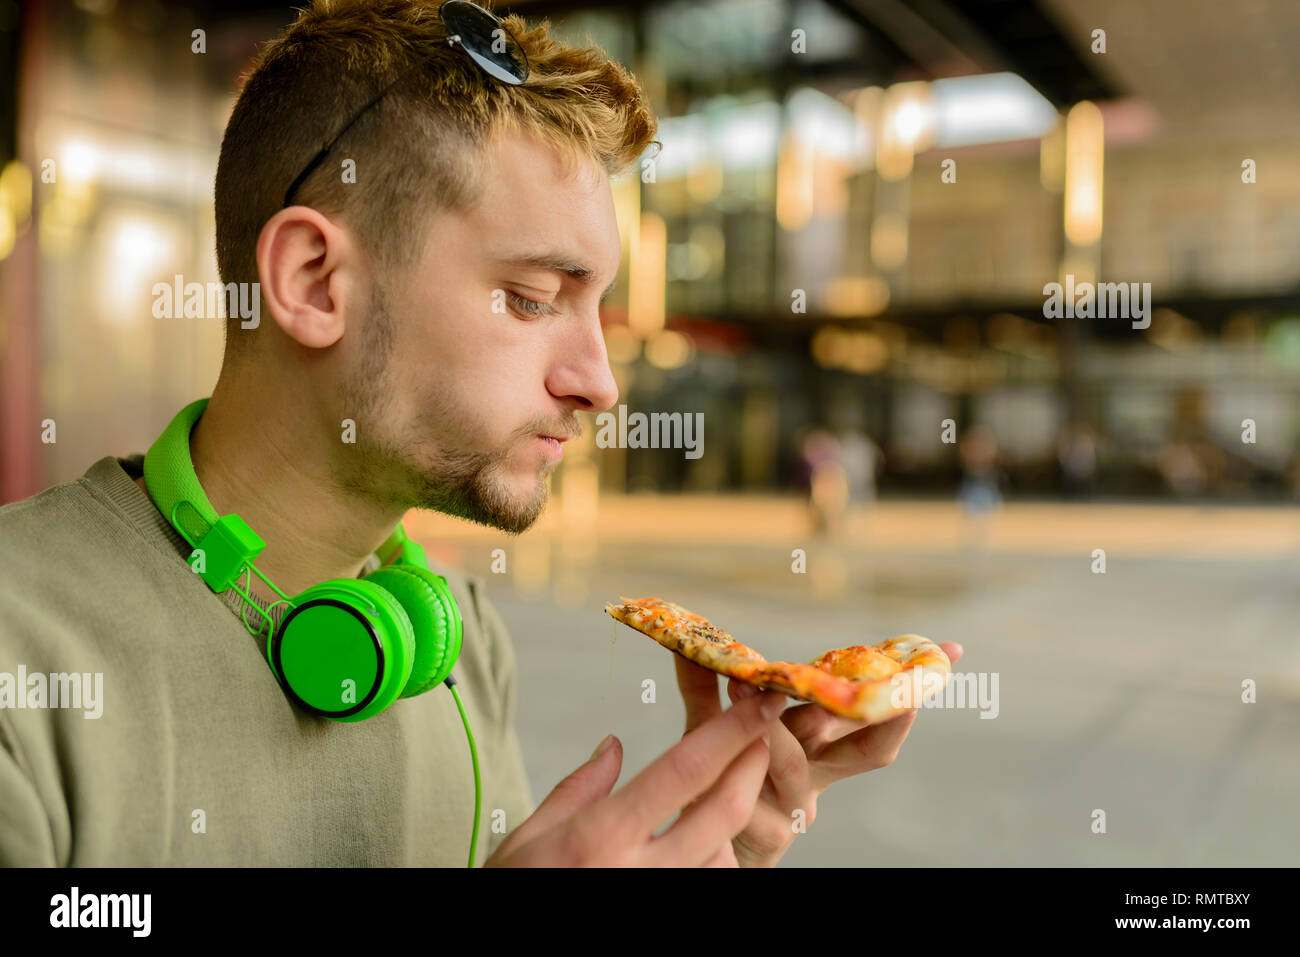 Bel giovane con le cuffie a mangiare la pizza in strada di città Foto Stock